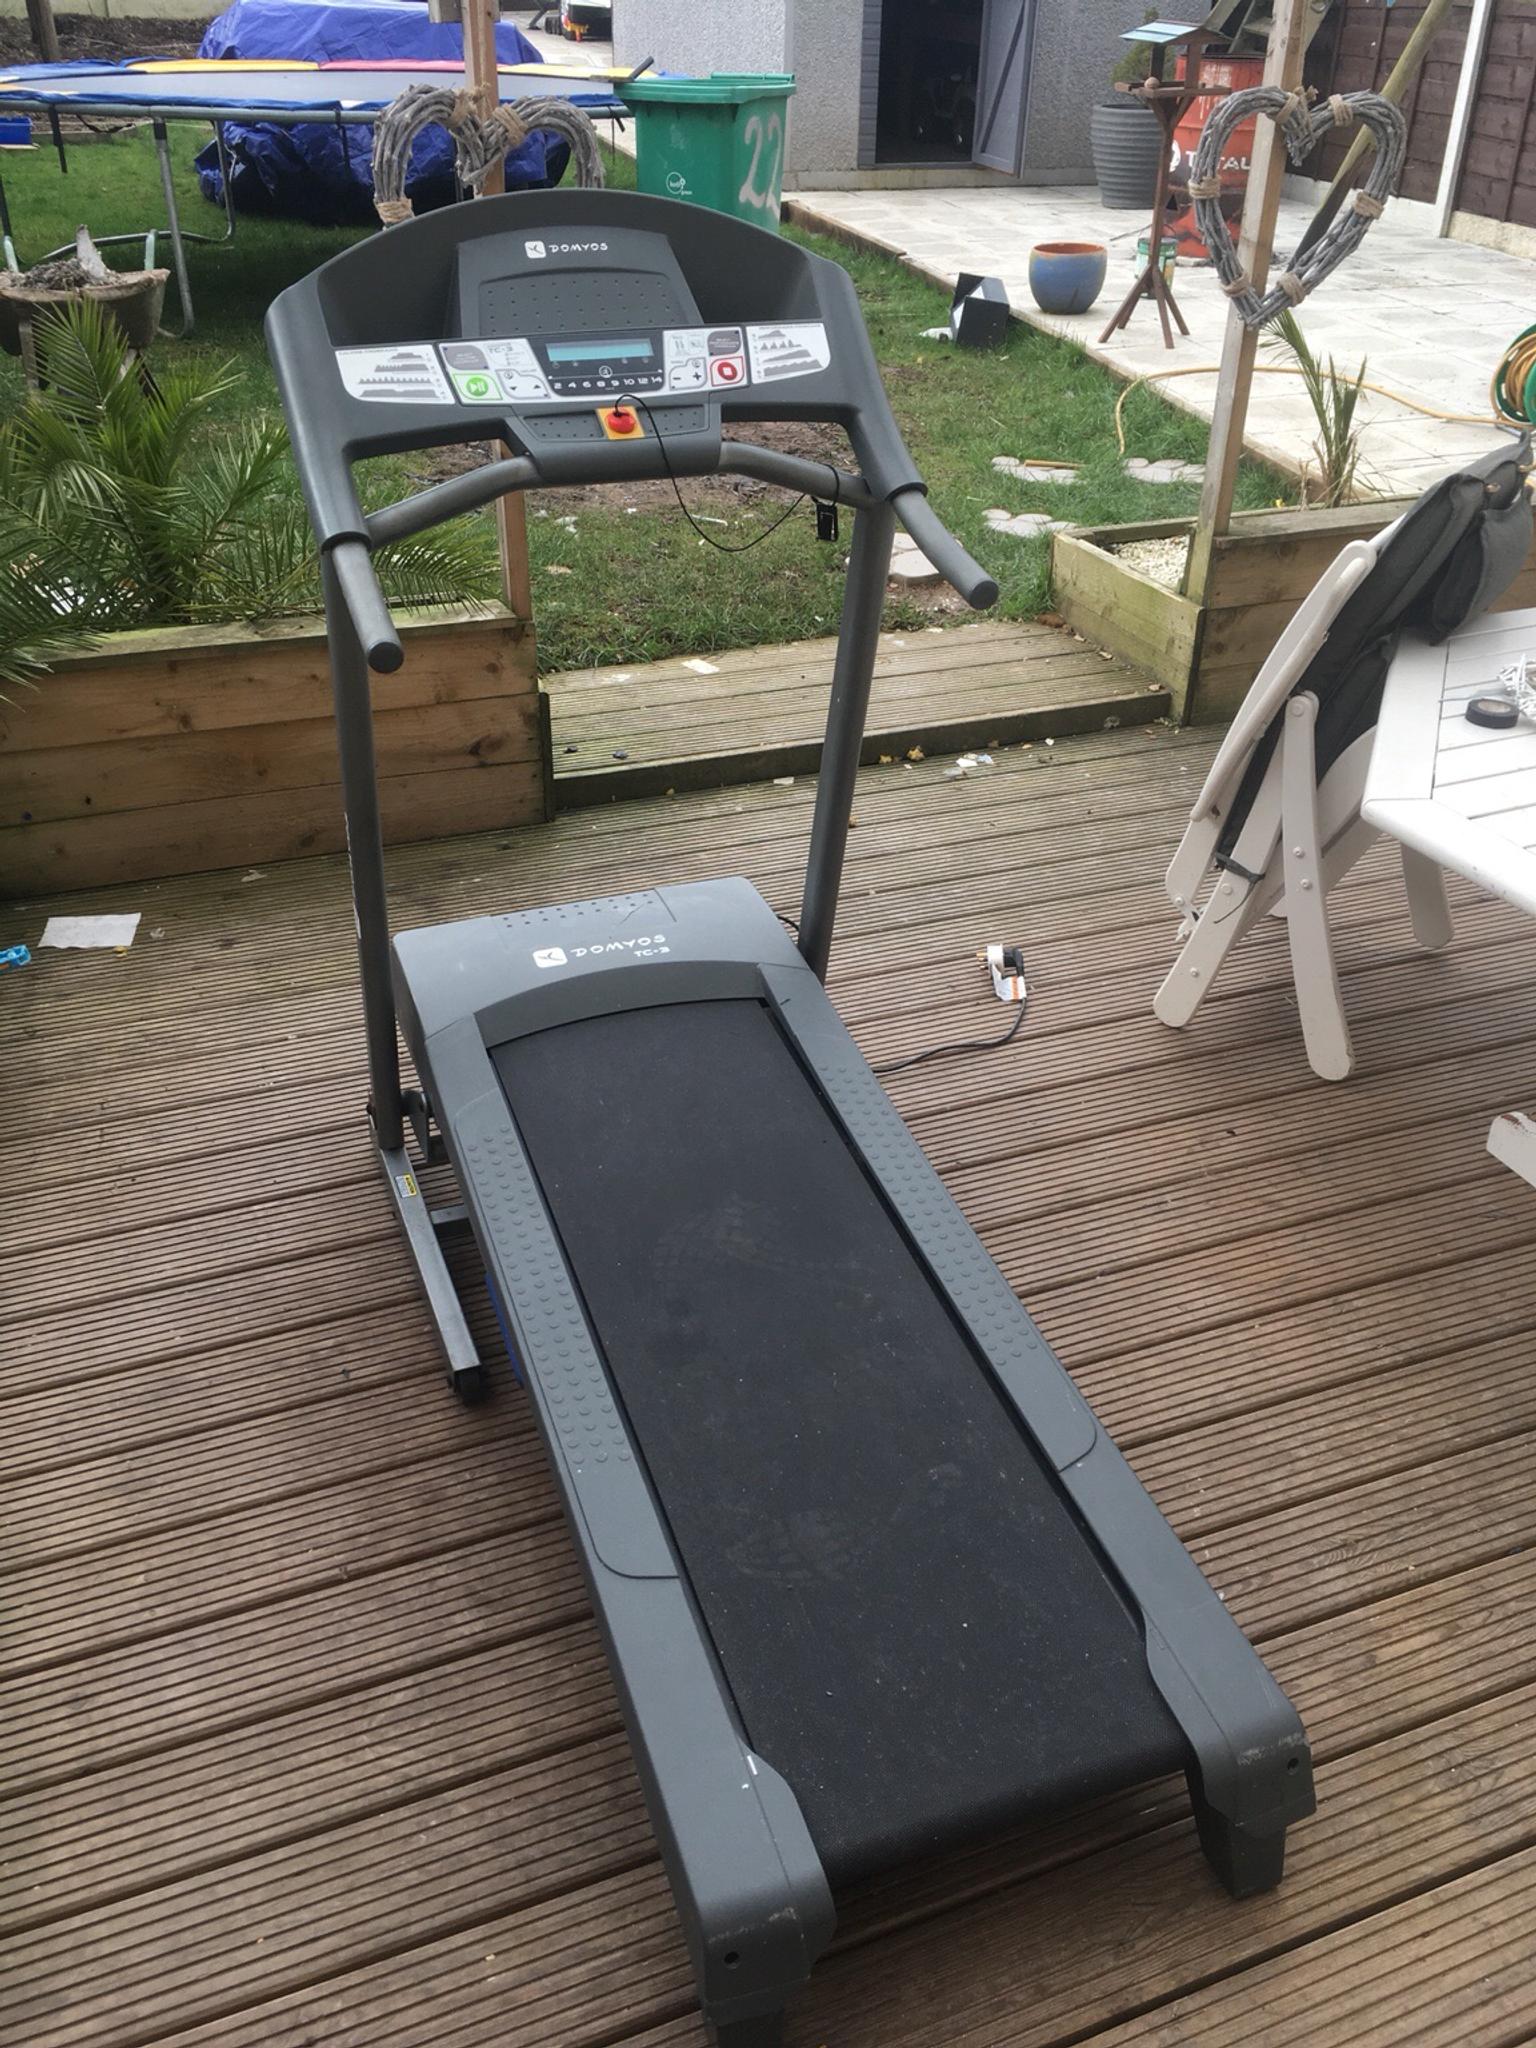 decathlon treadmill